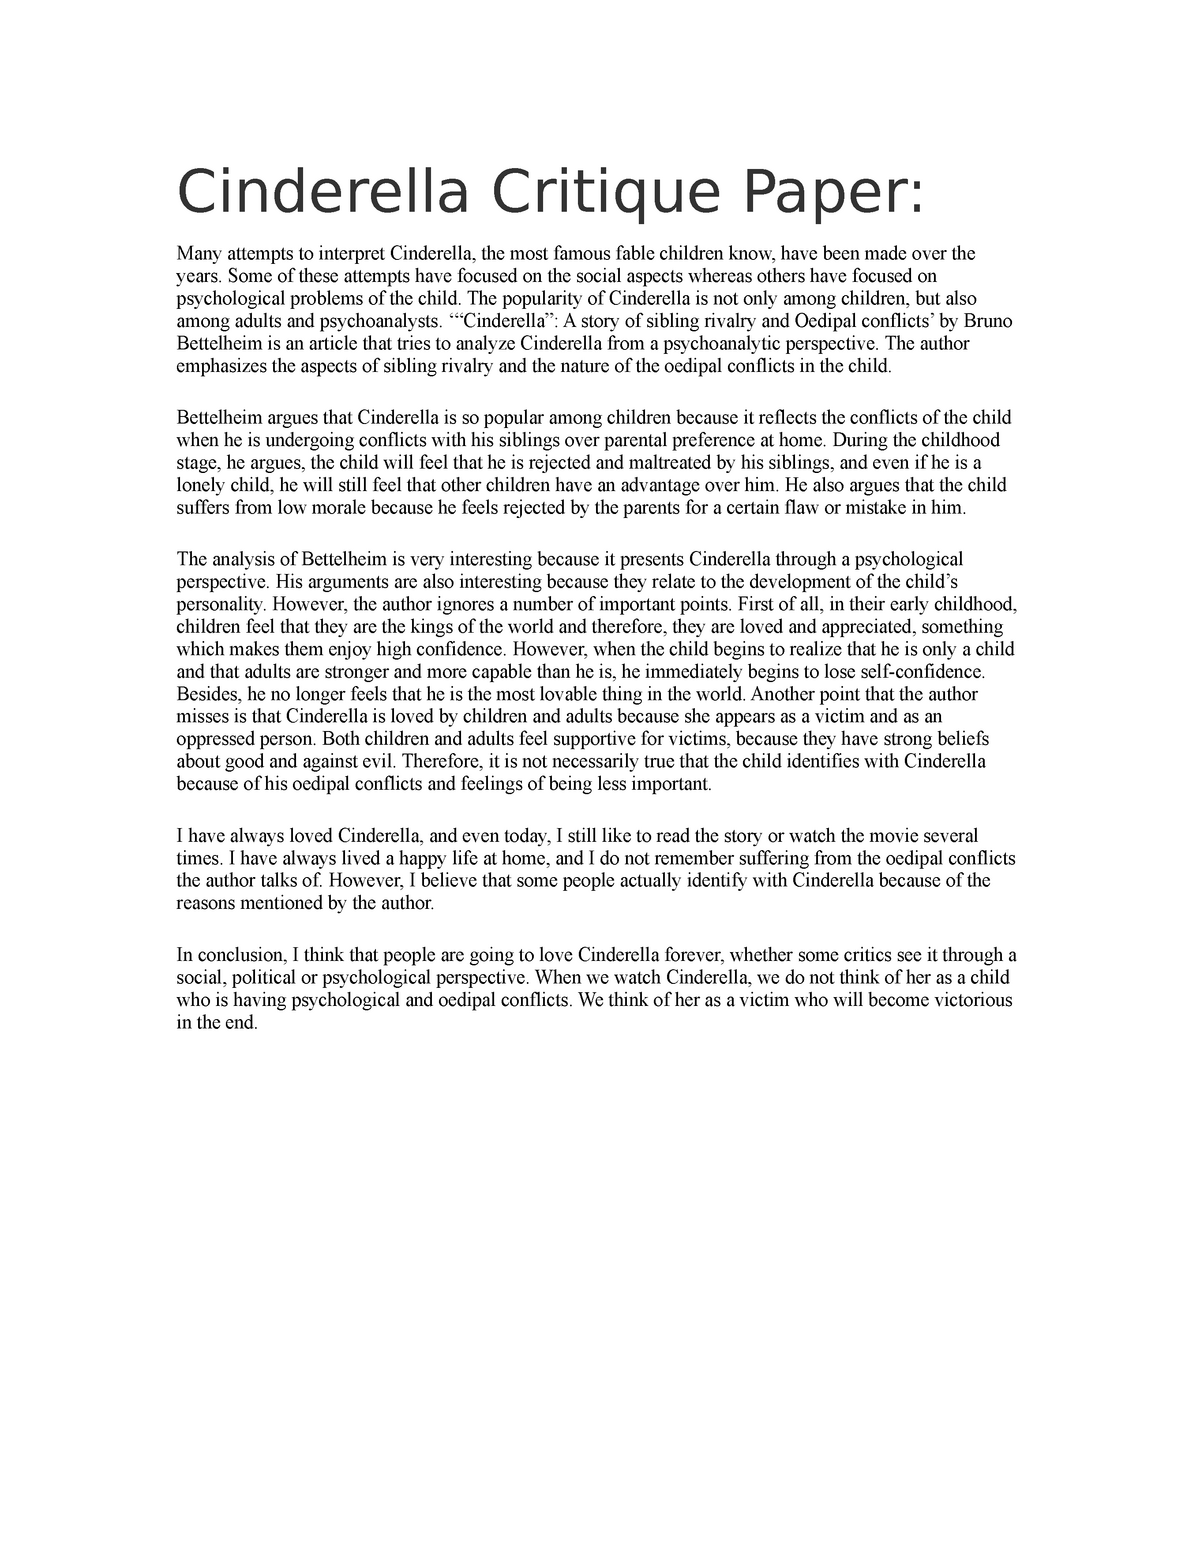 Cinderella Critique Paper - World Literature - WL 25 - PUP - StuDocu